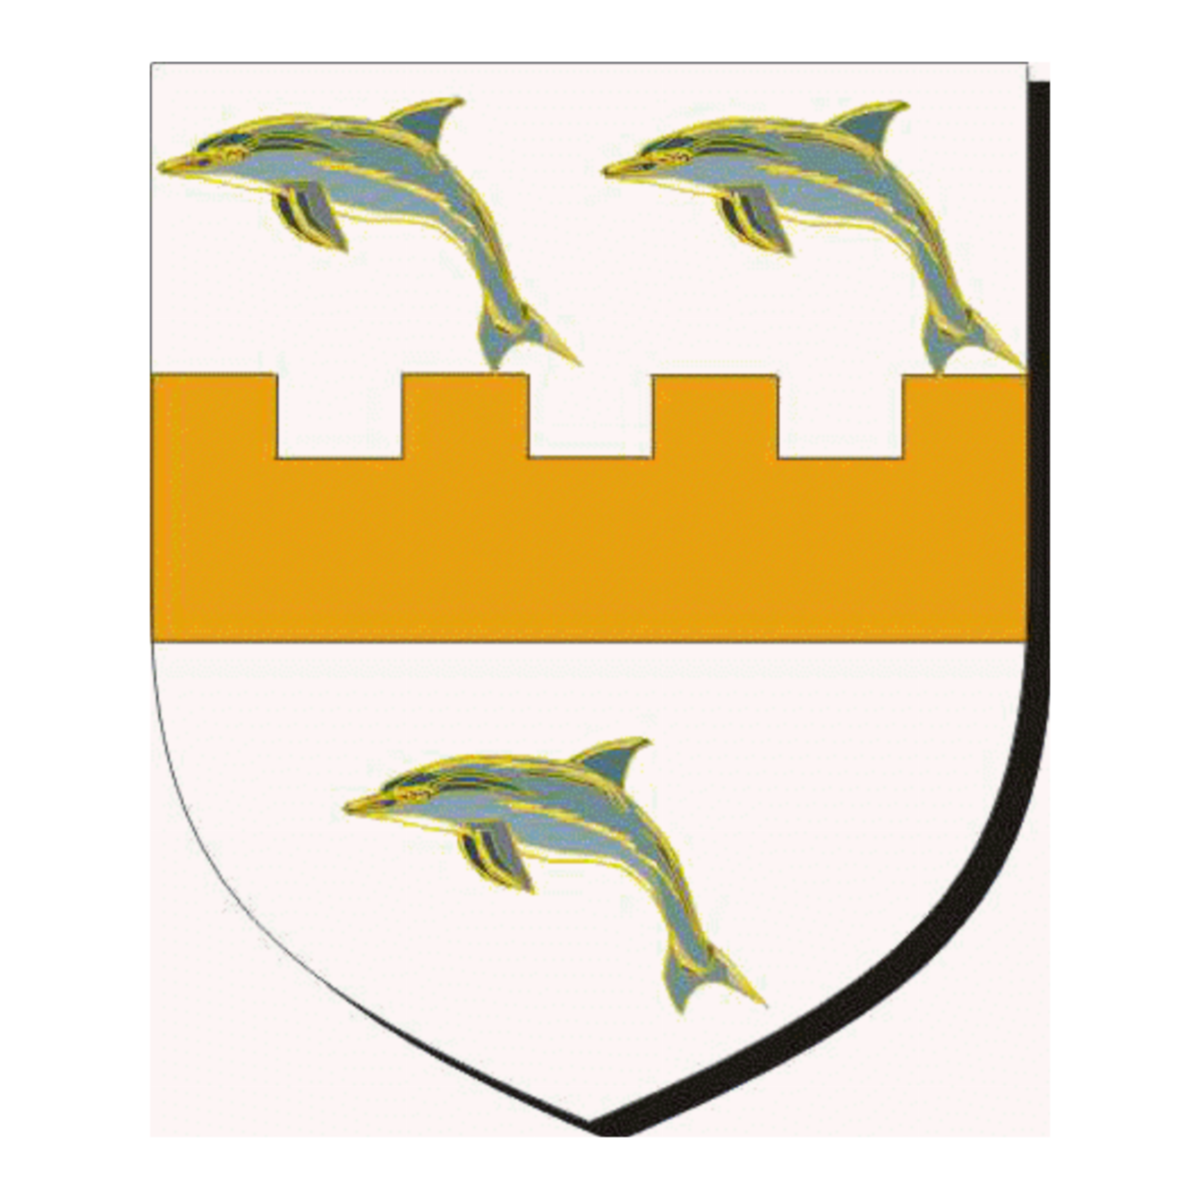 Coat of arms of familyFischer